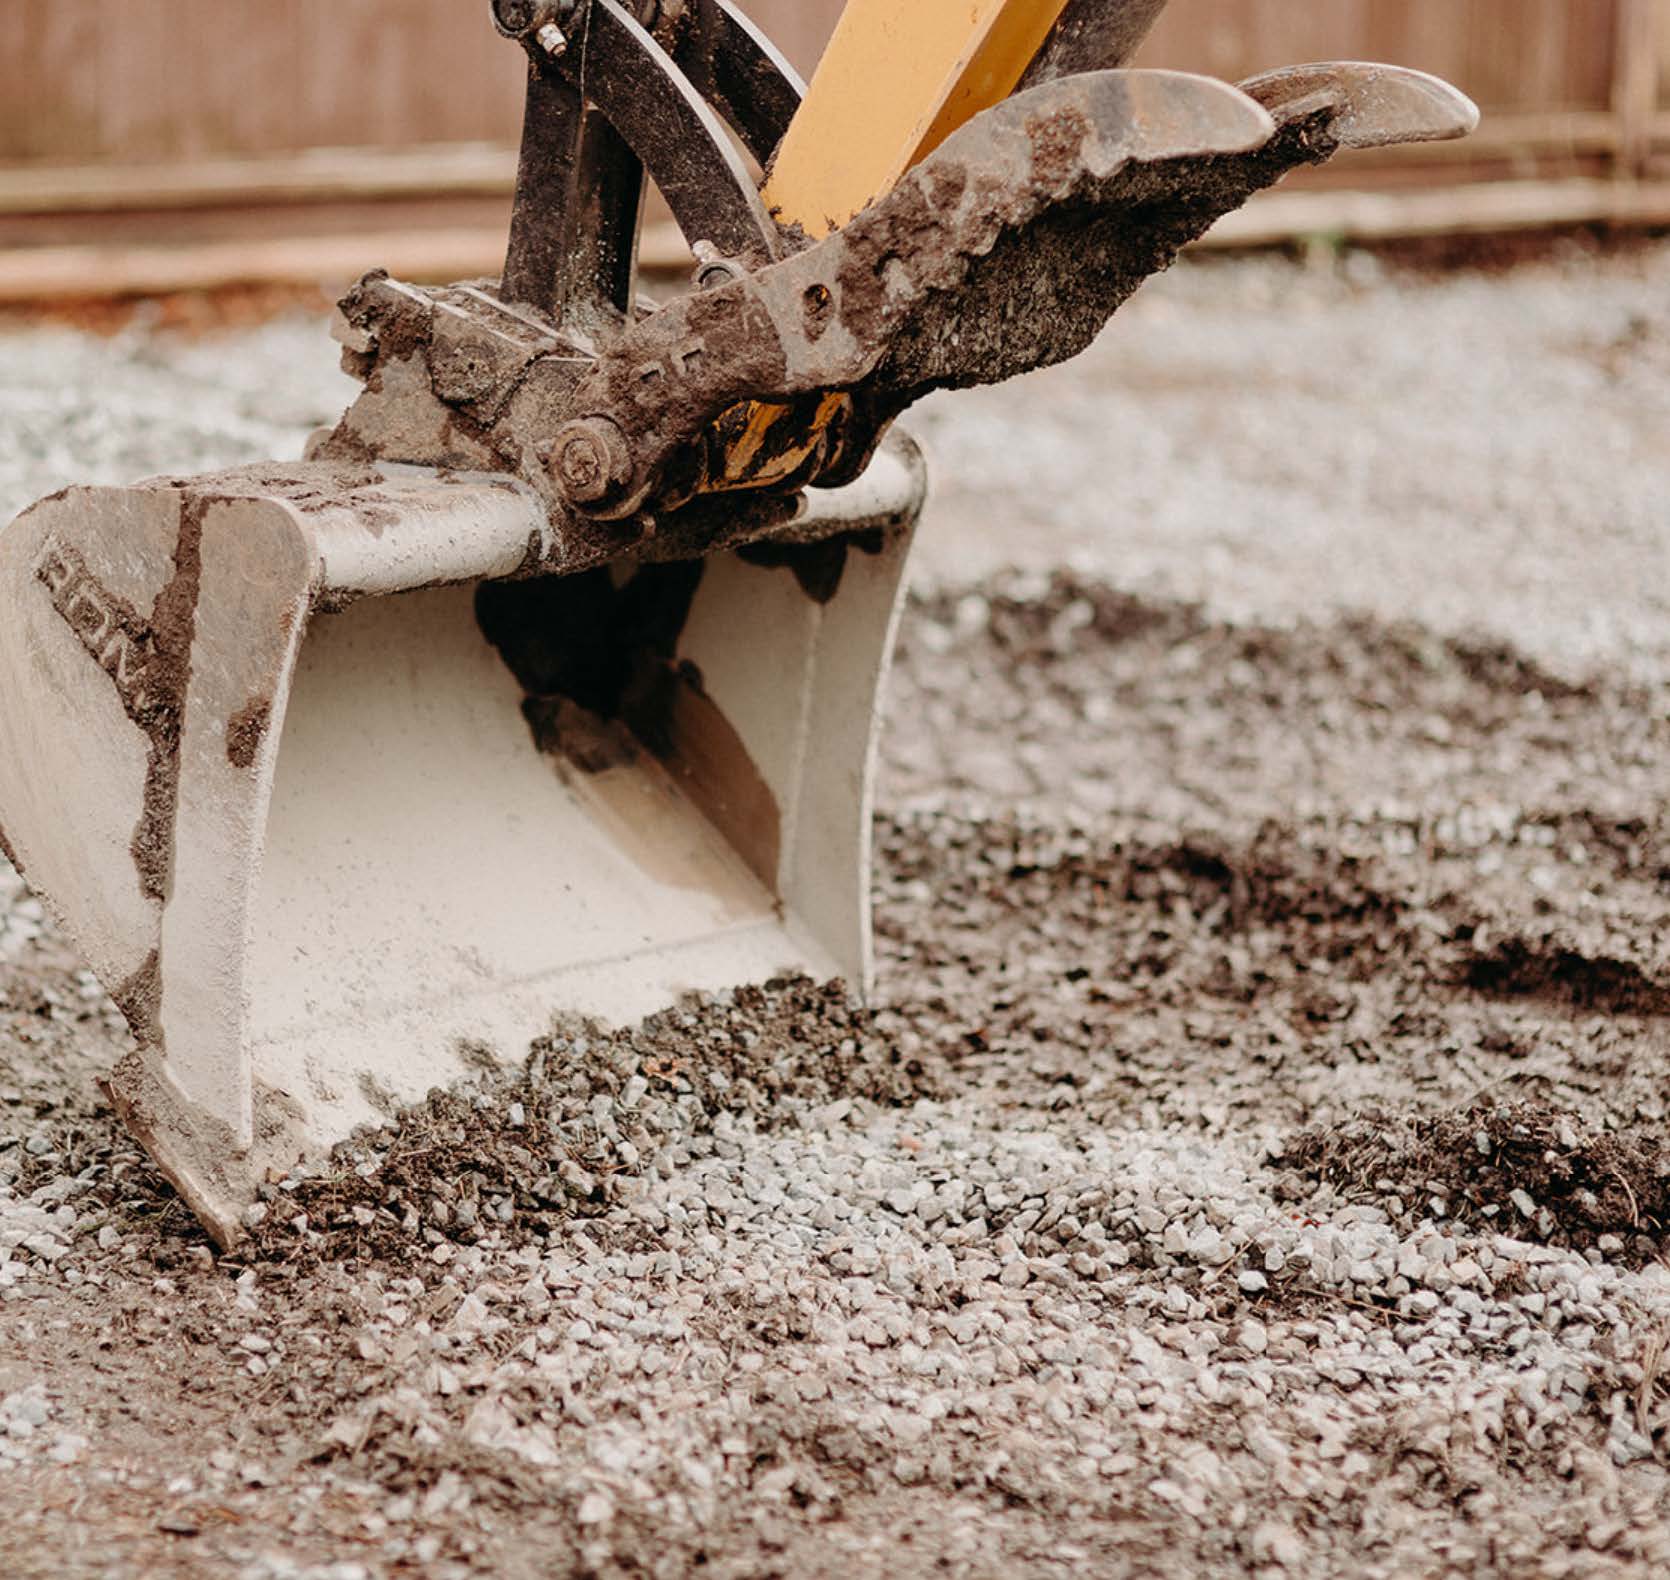 A digger excavating